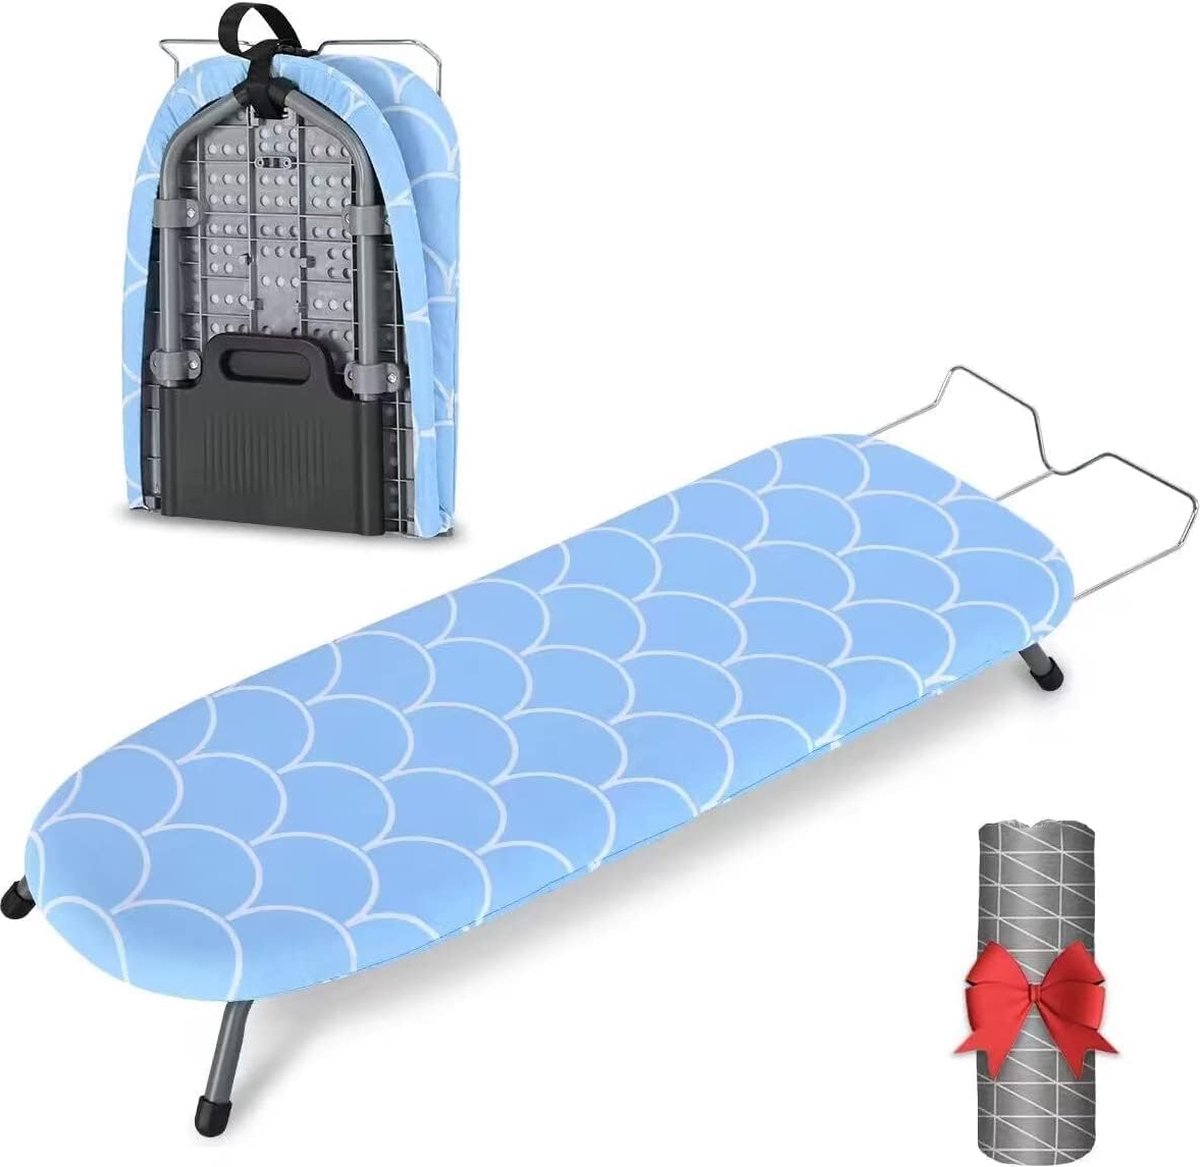 Opvouwbare tafelstrijkplank, kleine strijkplank, opvouwbaar met vouwfunctie, ruimtebesparende mini opvouwbare strijkplank met antislipvoetjes voor thuisgebruik, 81,5 x 32 cm